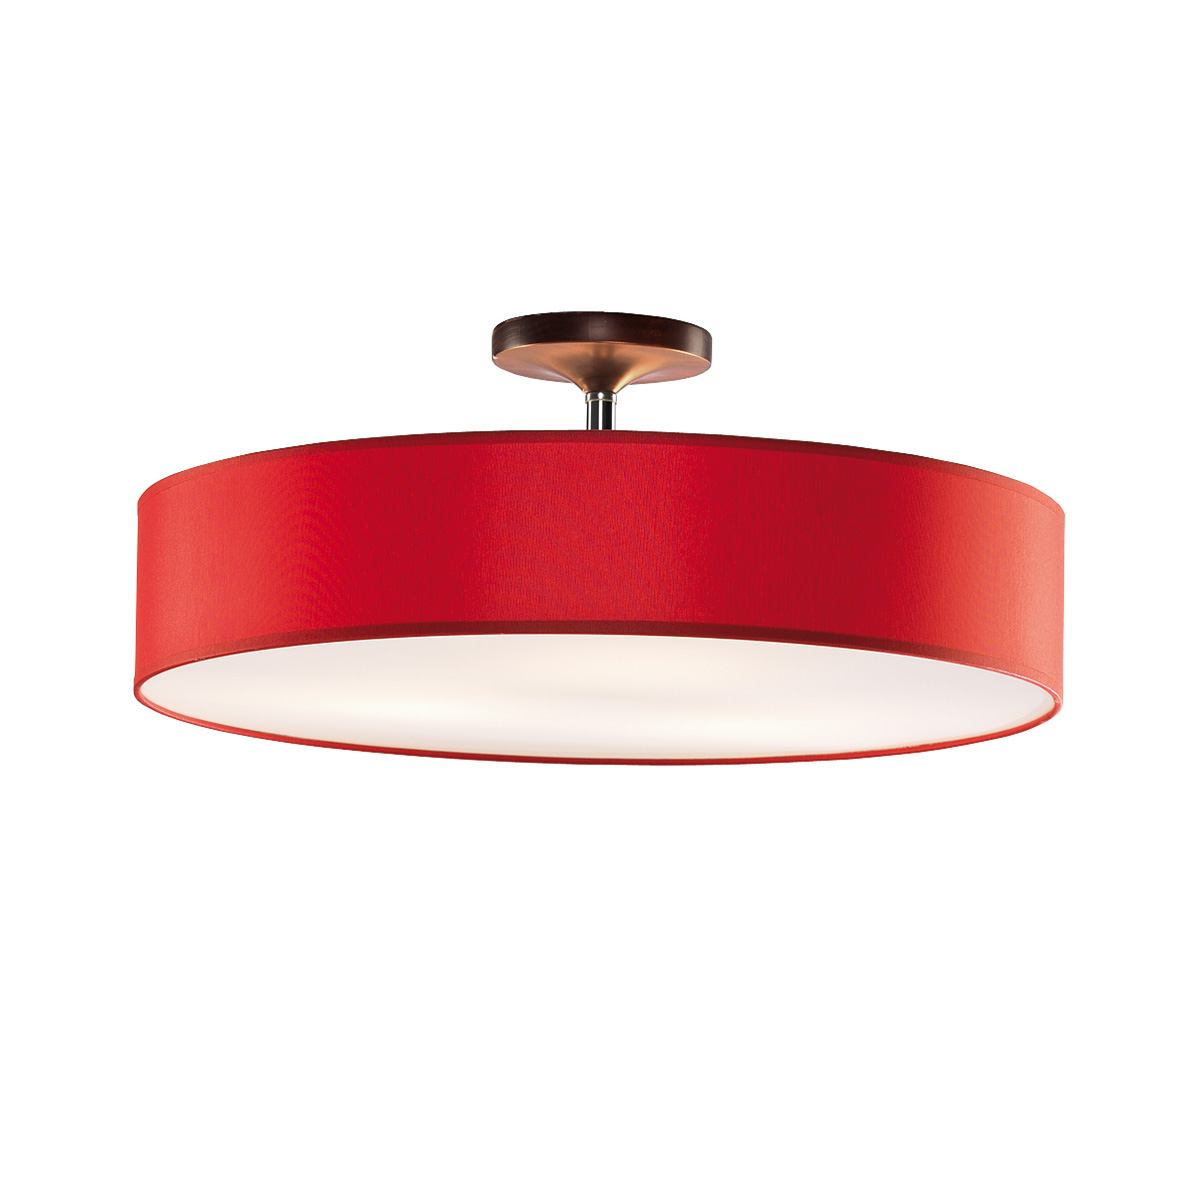 Φωτιστικό ημιοροφής με κόκκινο καπέλο DISCO ZEN ceiling lamp with red shade